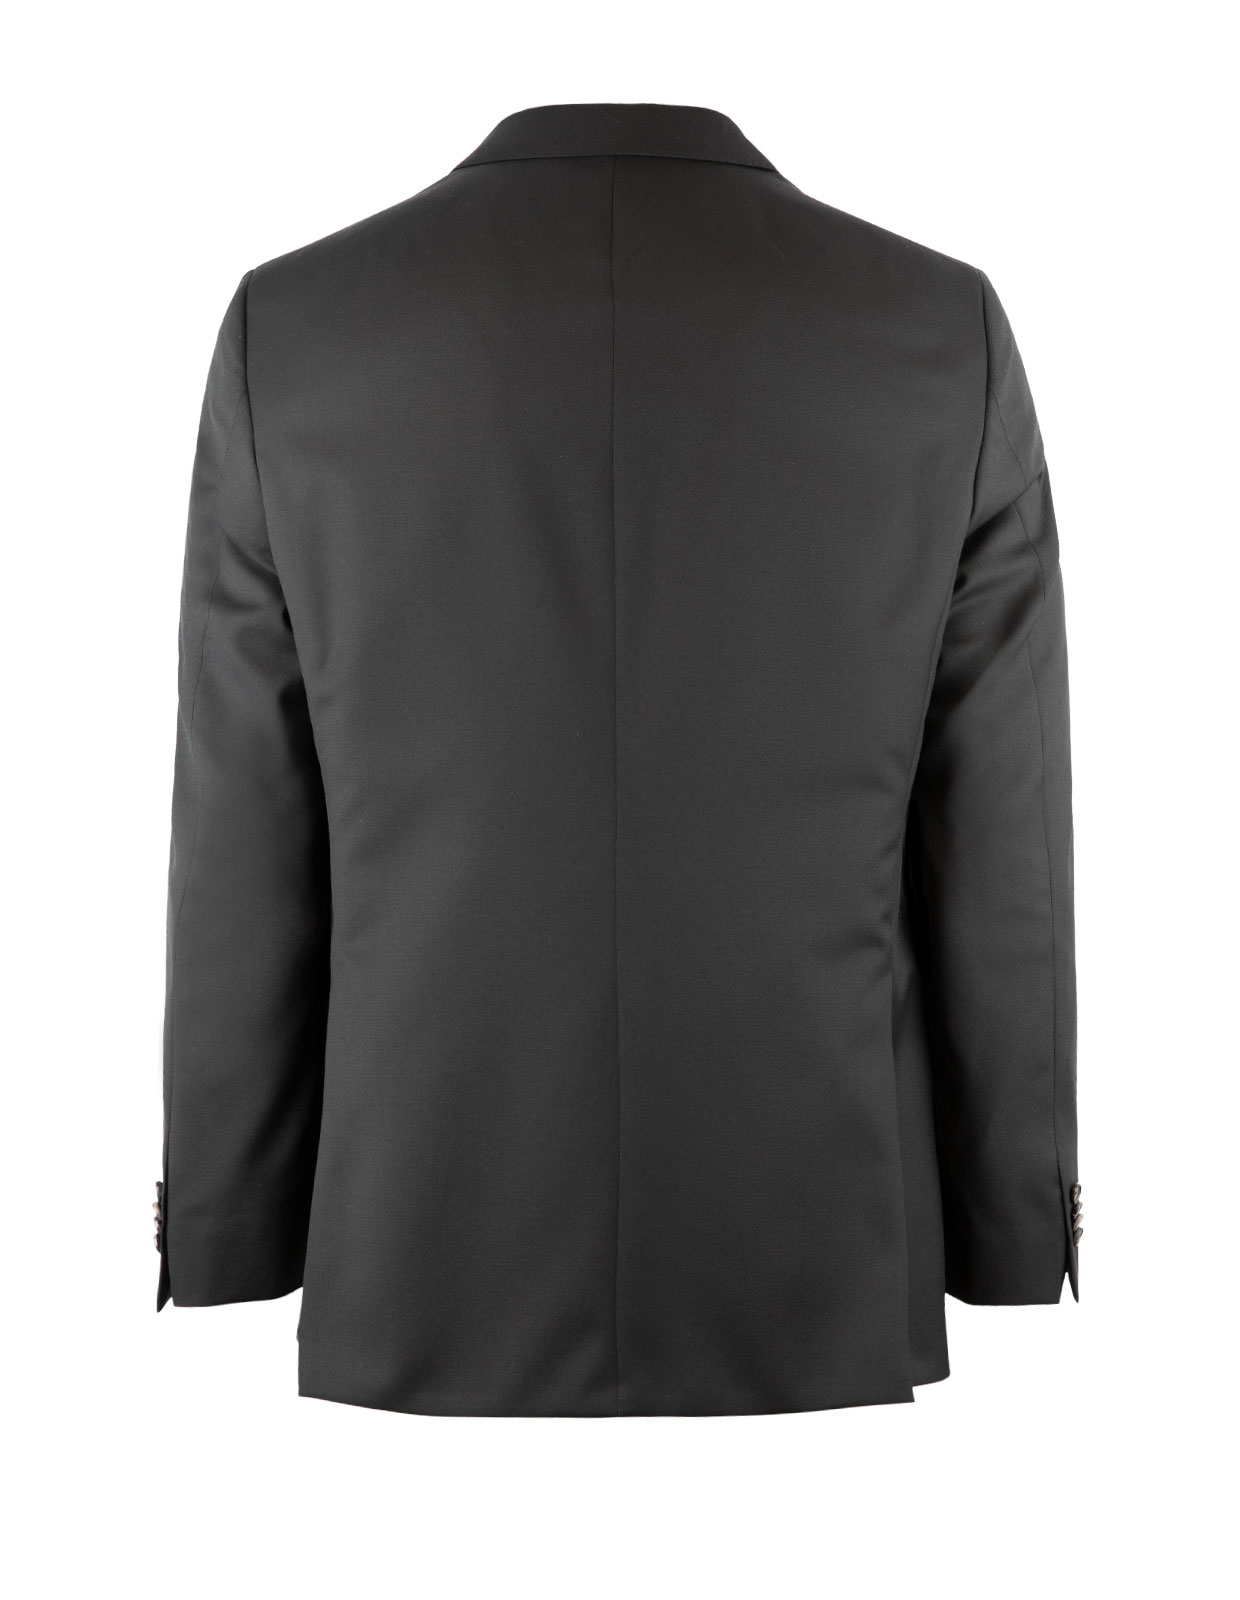 Edson Suit Jacket 110's Wool Mix & Match Black